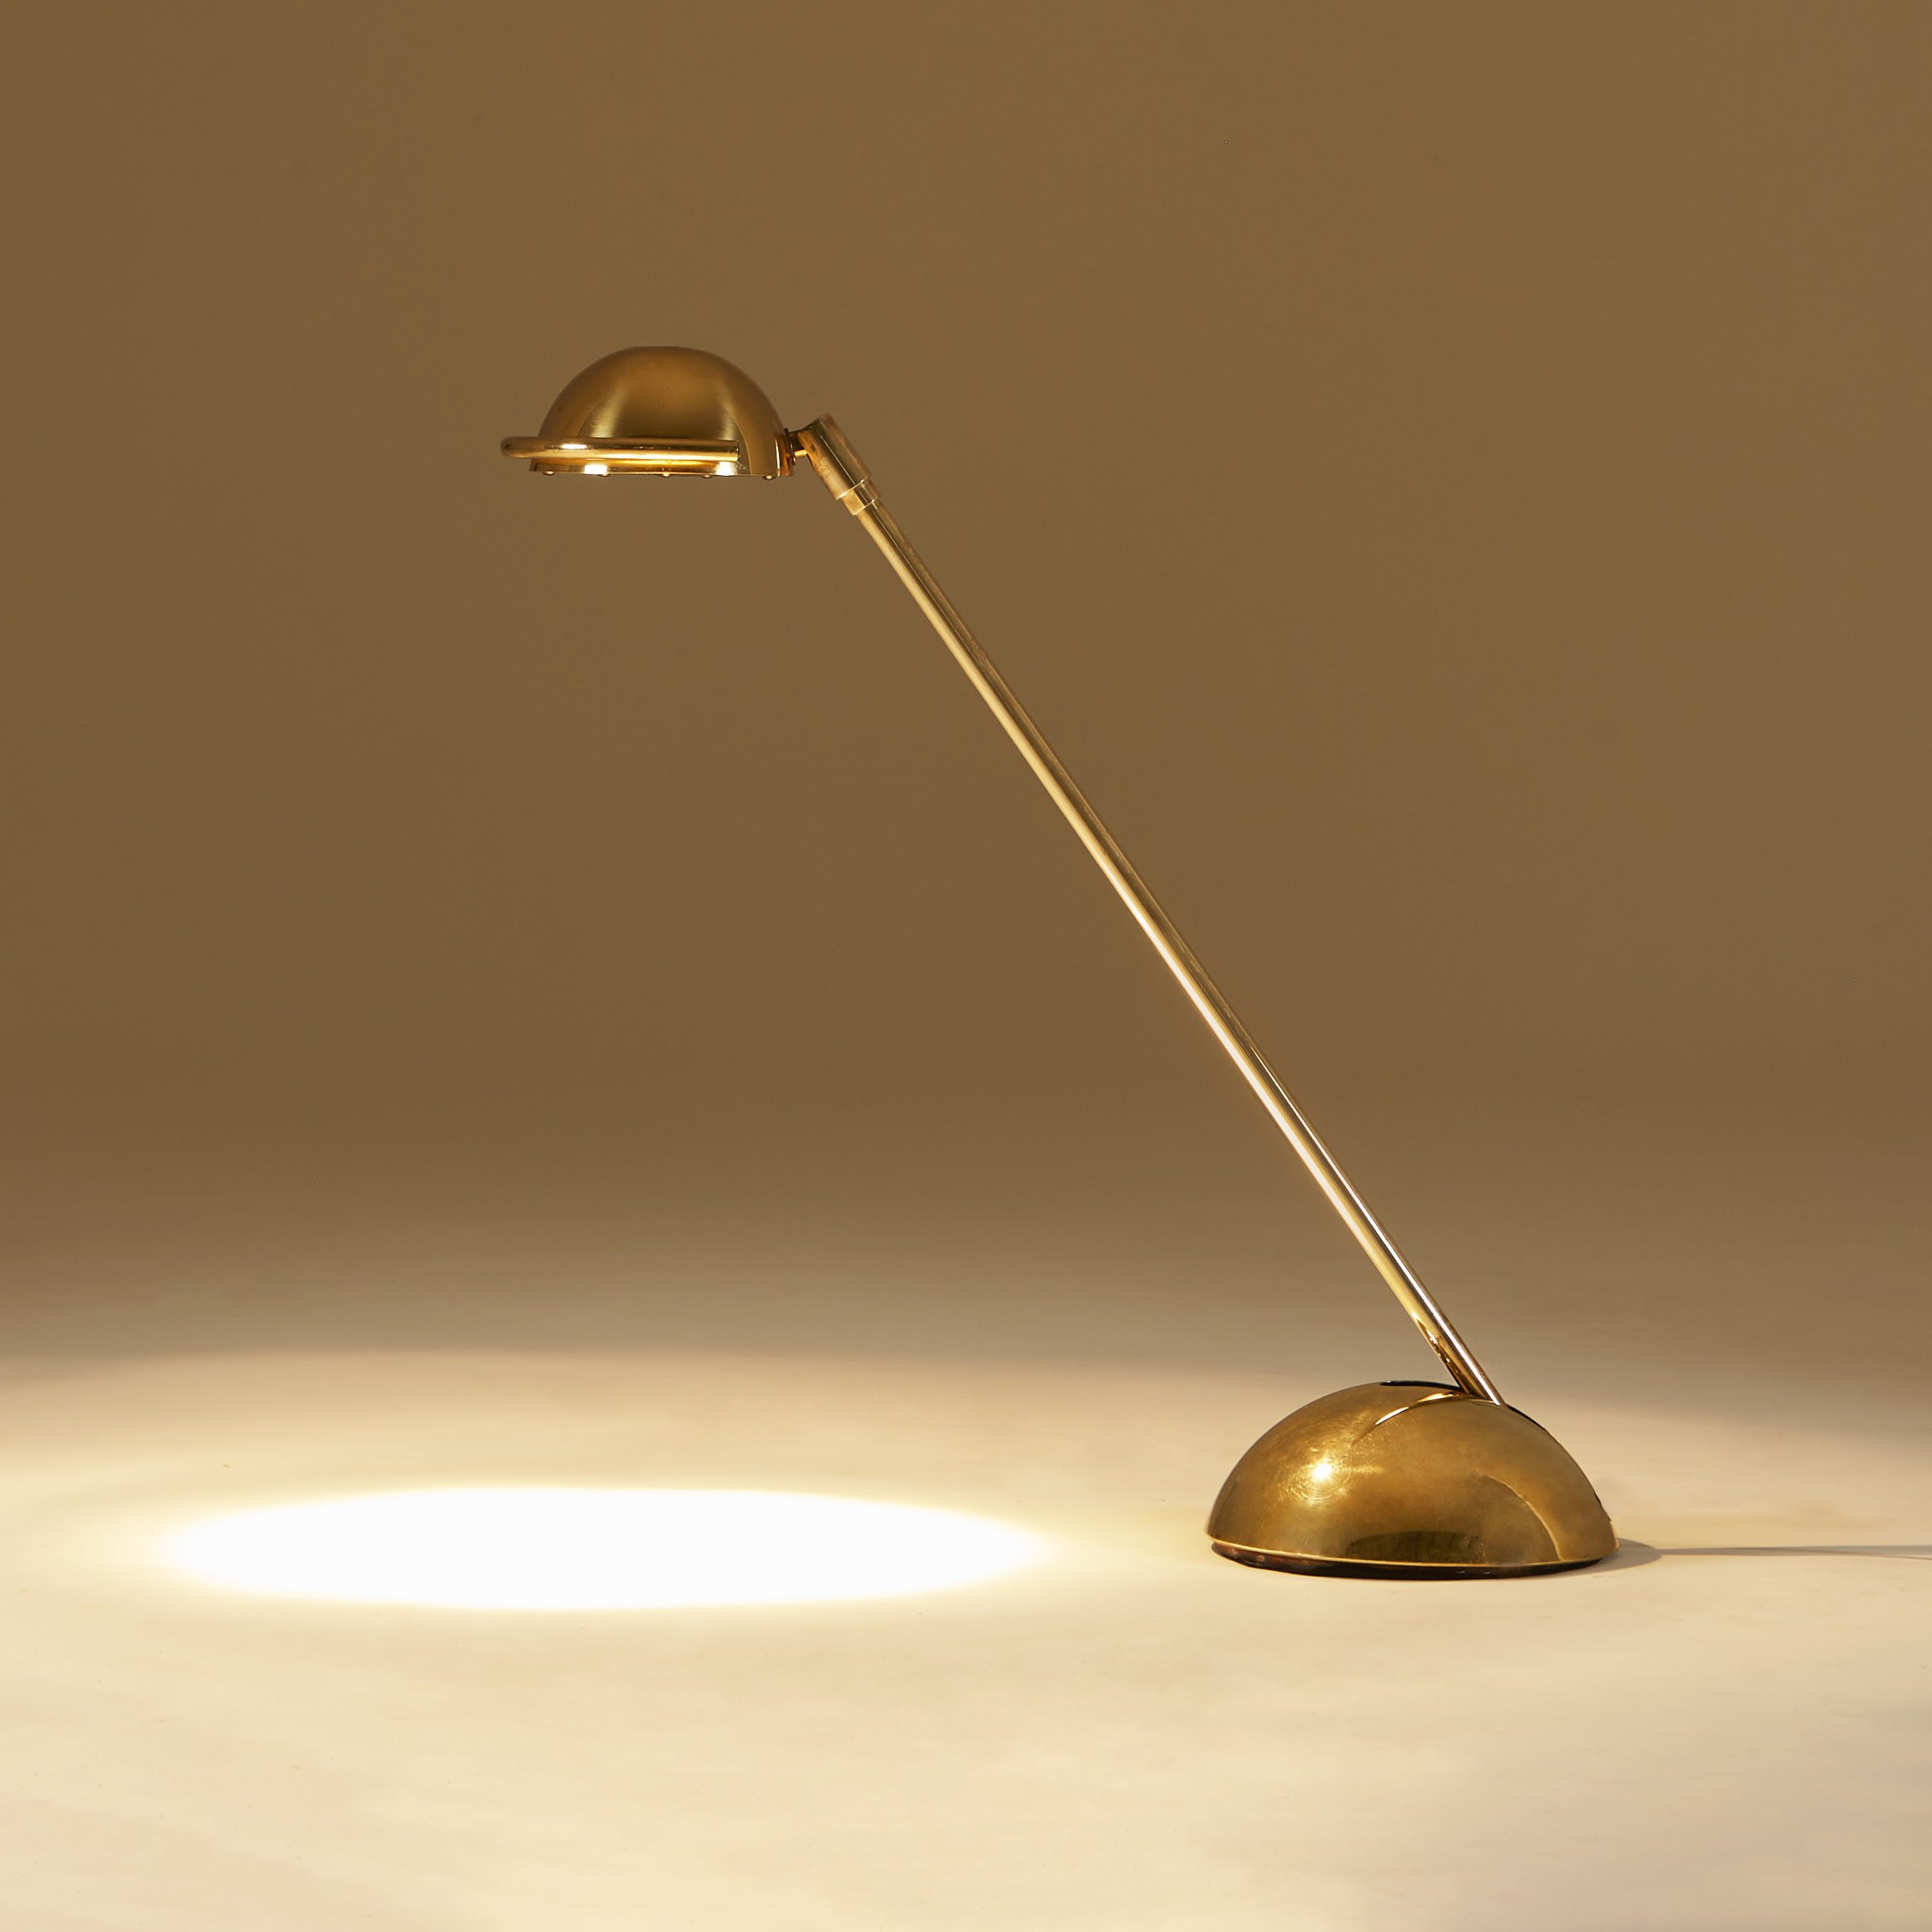 The image for Brass Desk Lamp 151 V1